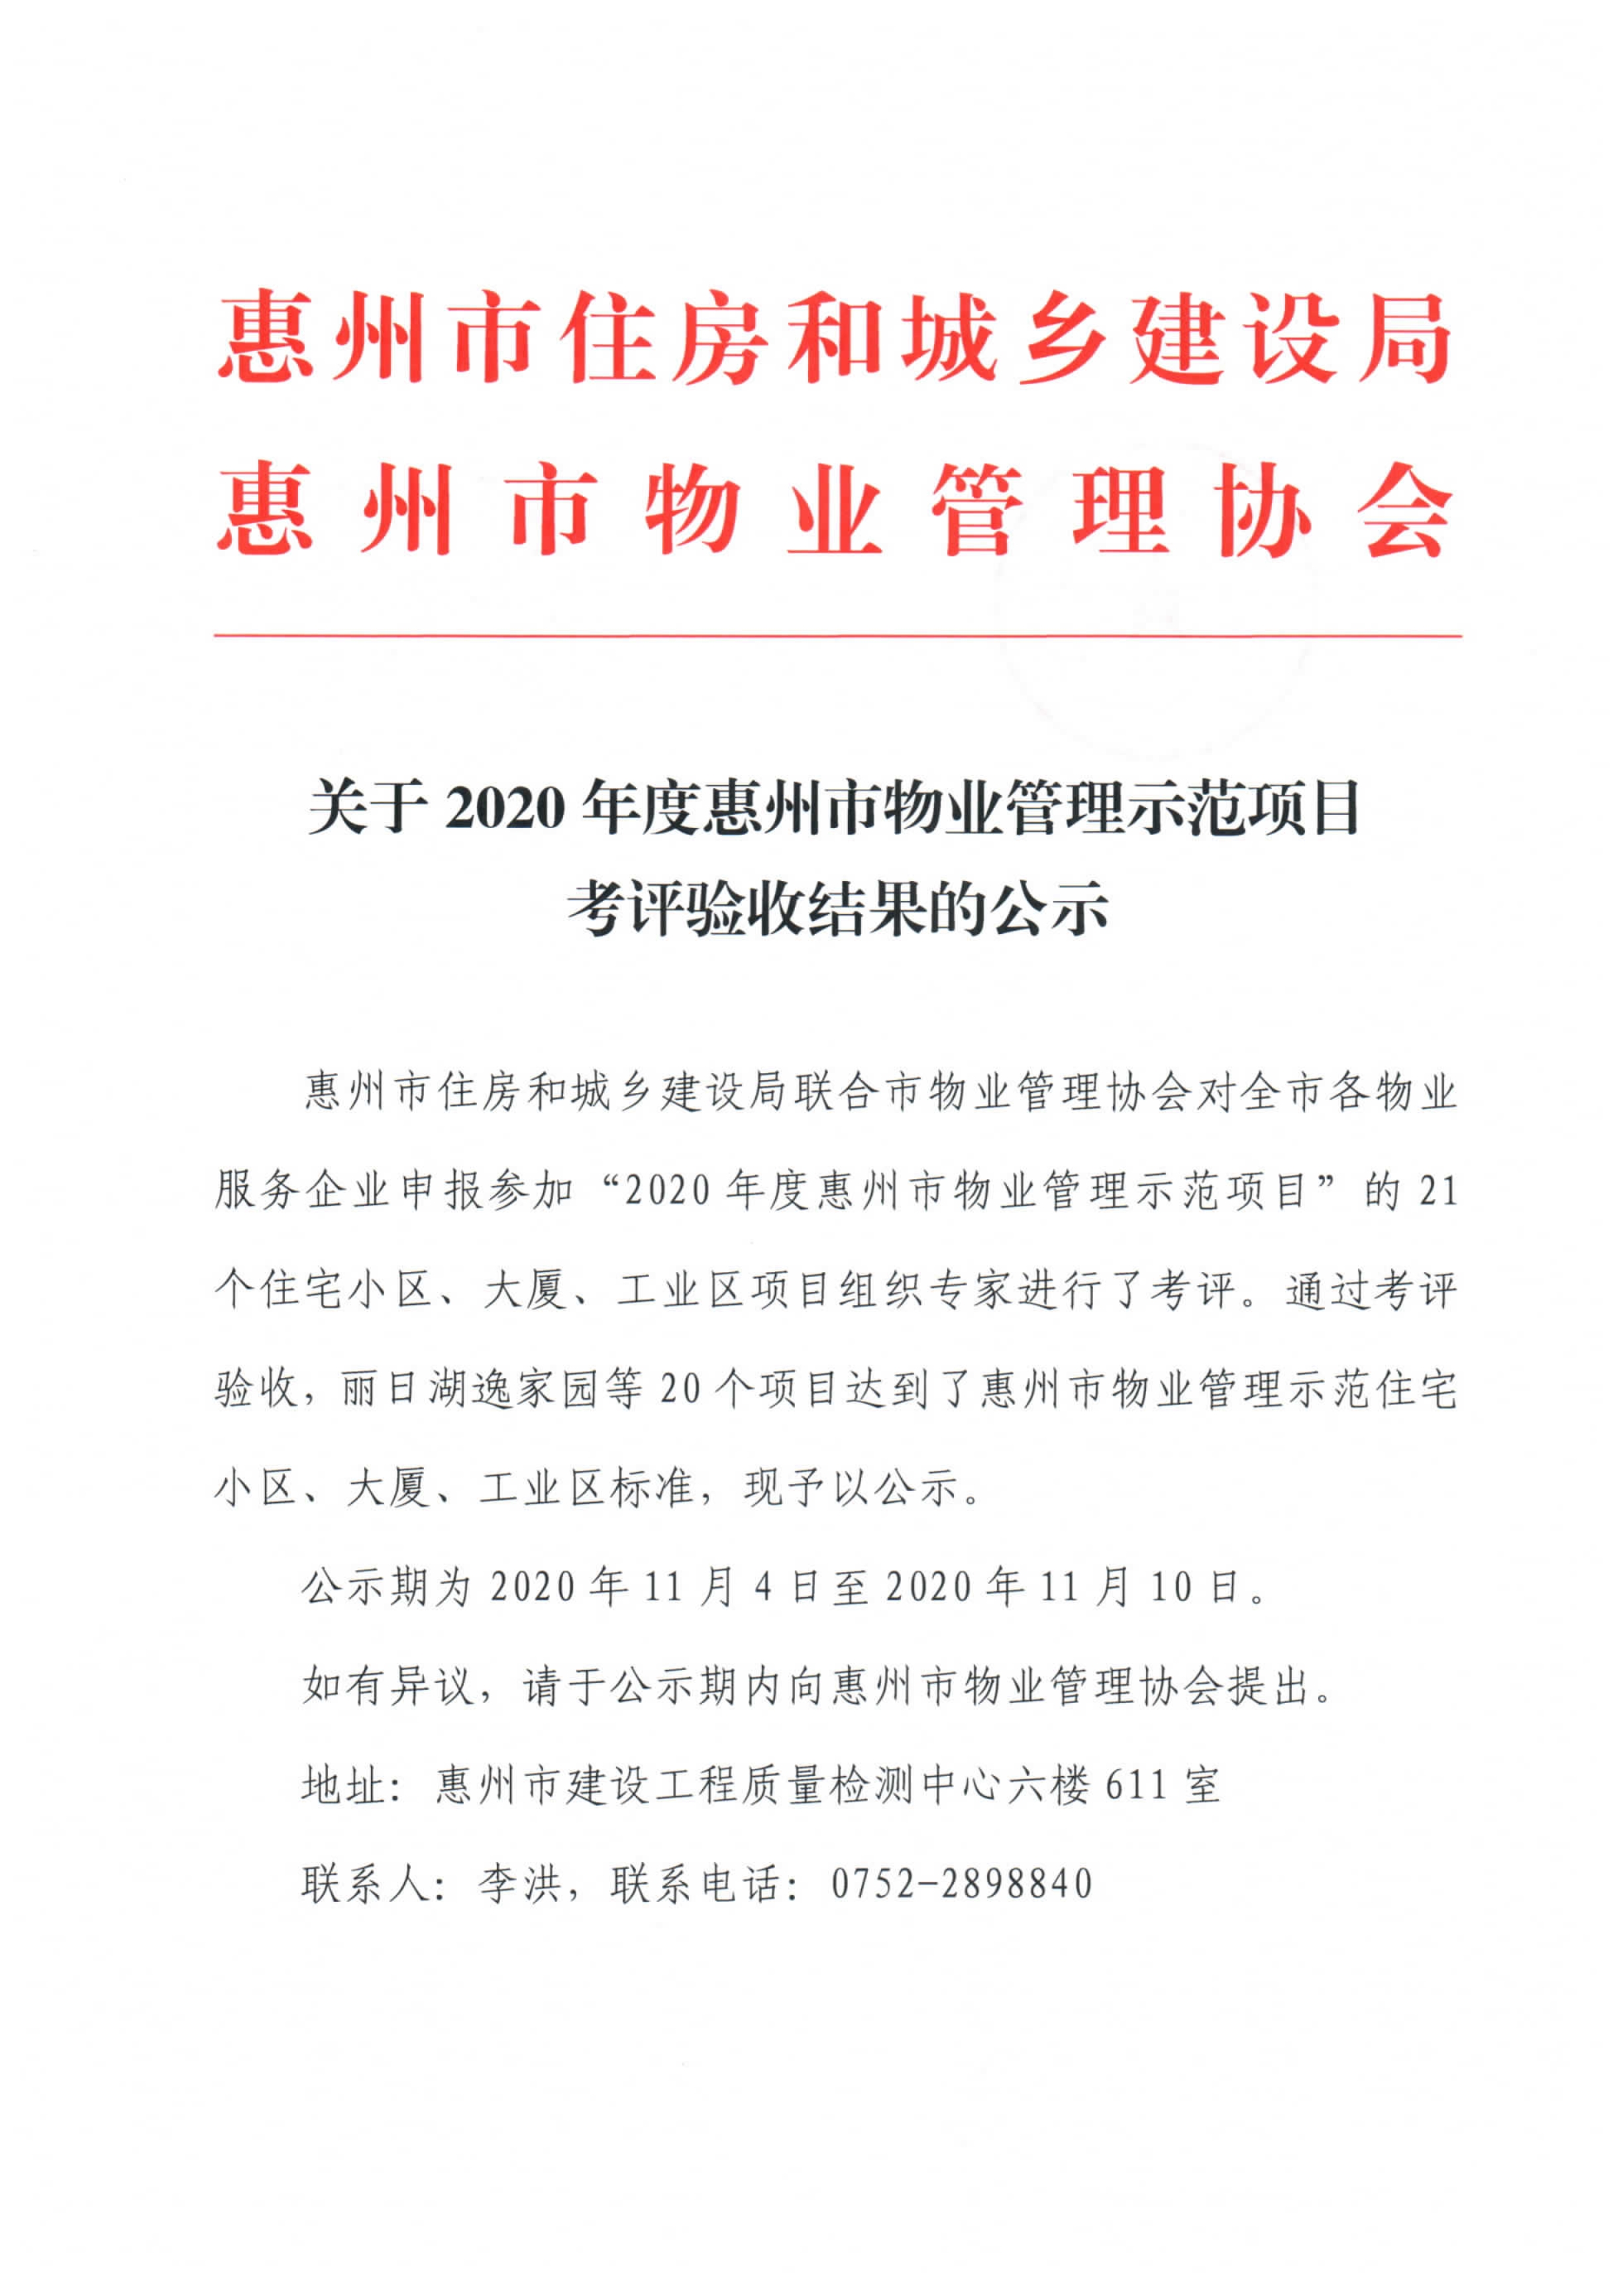 关于2020年度惠州市物业管理示范项目考评验收结果的公示_1.jpg